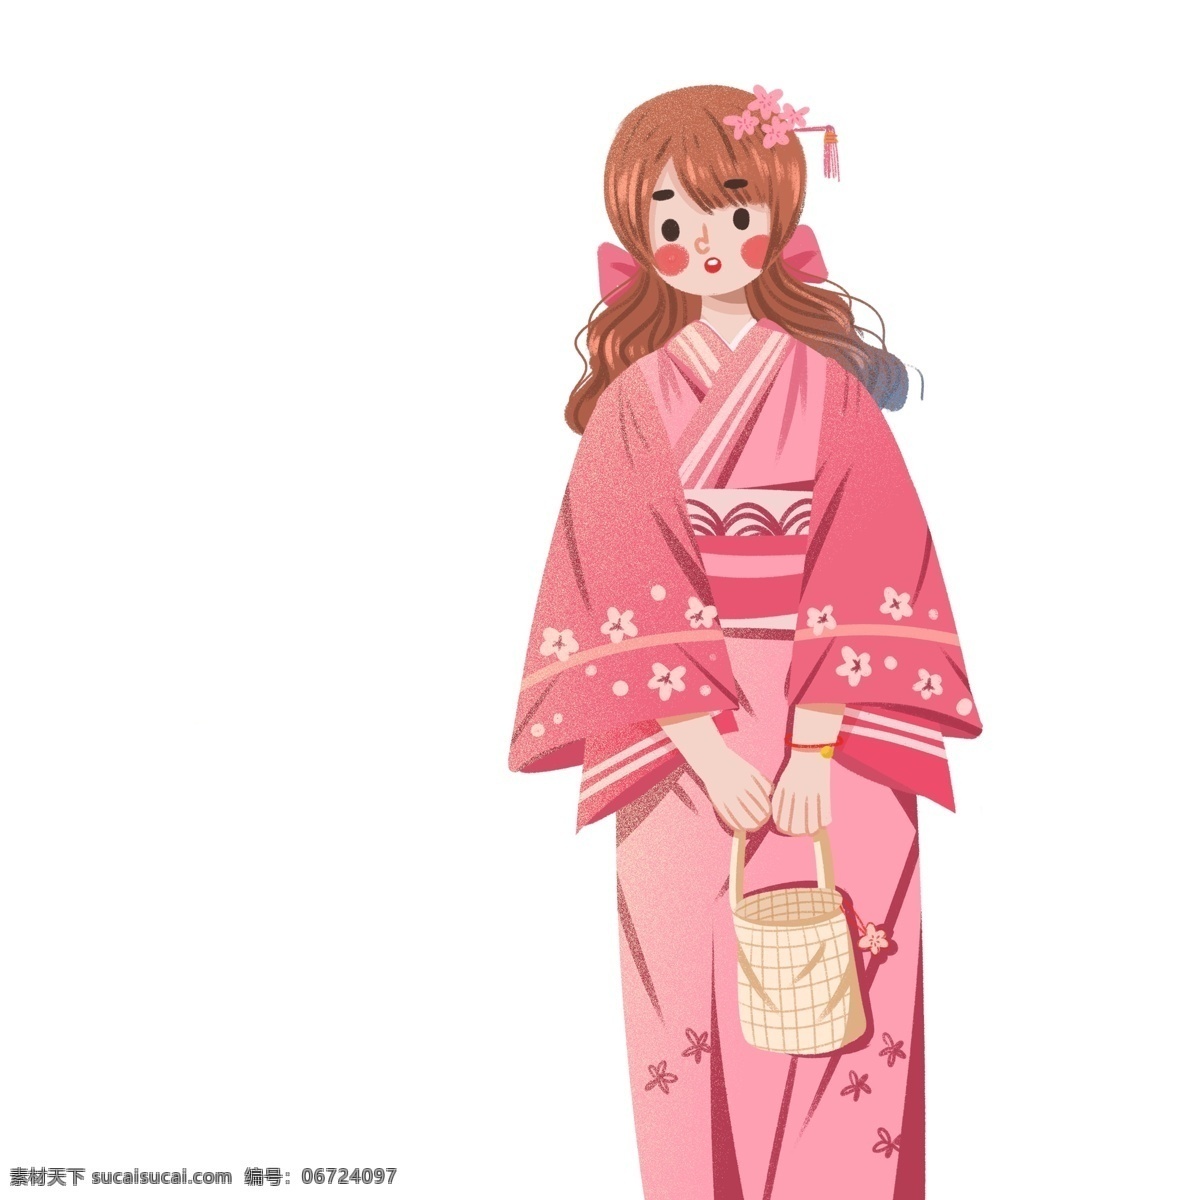 清新 可爱 穿着 和服 少女 人物 卡通 女生 日本 日系 人物设计 插画设计